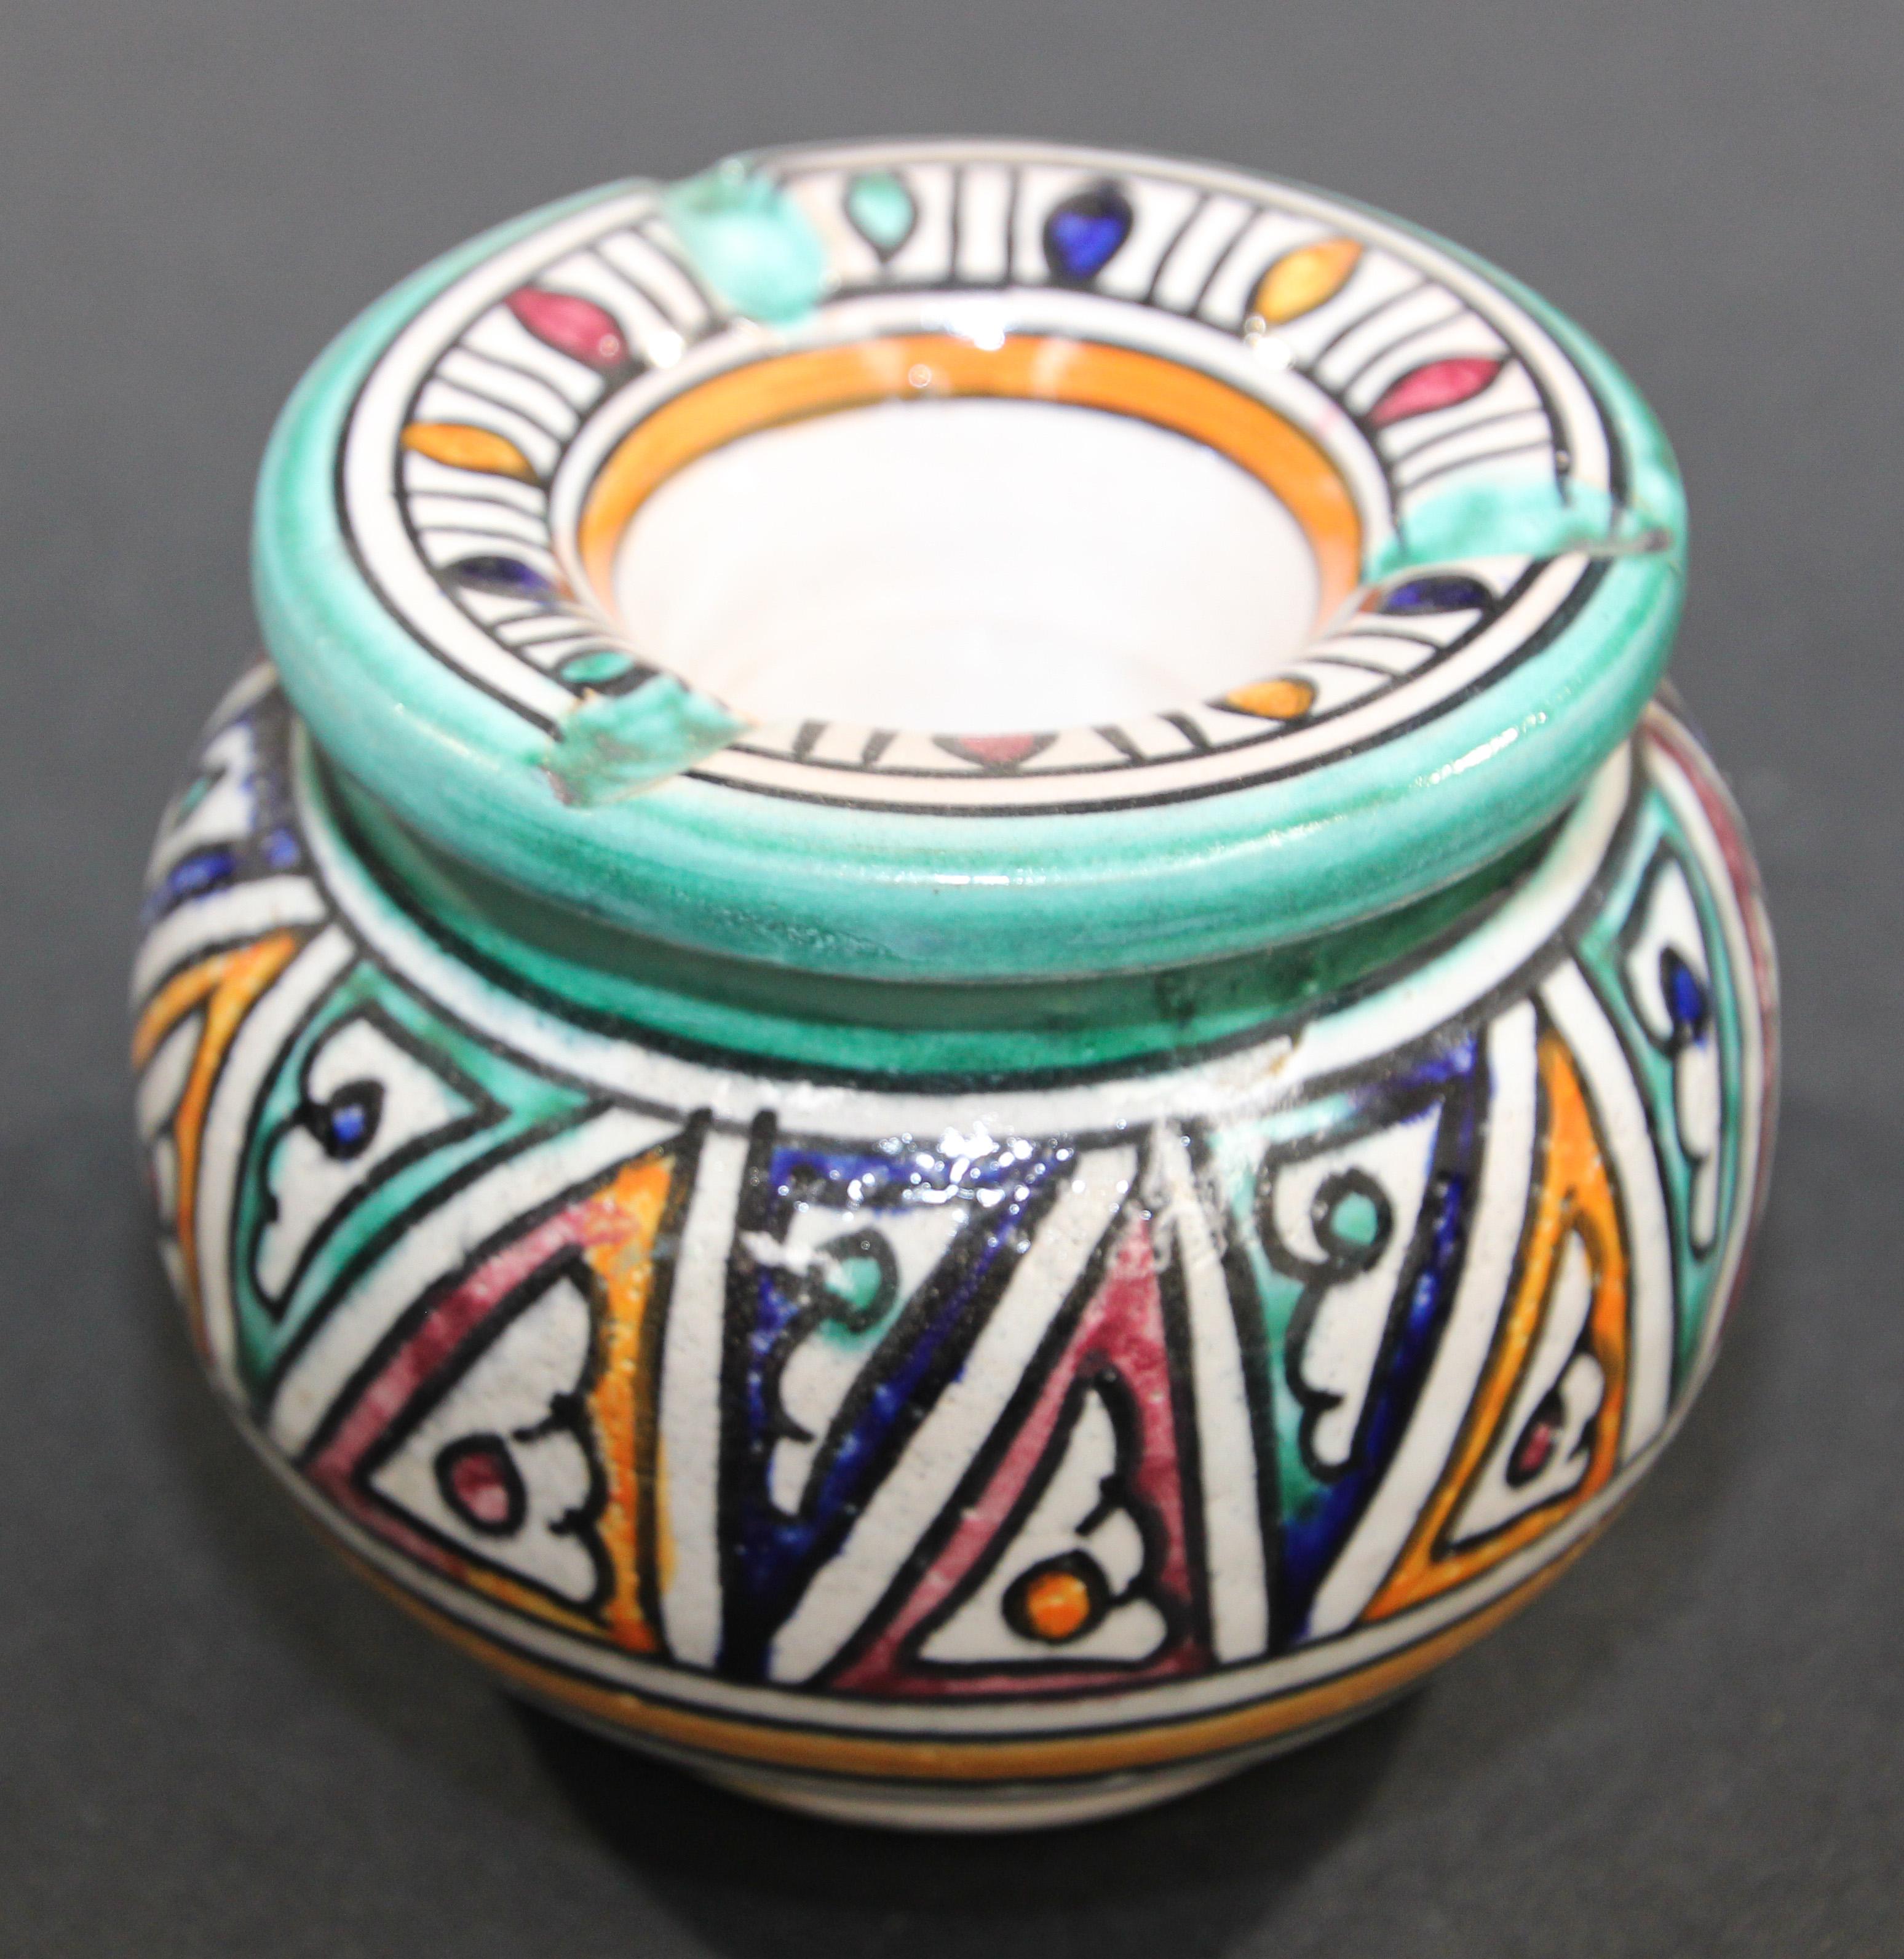 Cendrier en céramique peint à la main et couvert de motifs marocains.
Réceptacle à cendres couvert de céramique marocaine fabriquée à la main.
Ce cendrier couvert de taille moyenne peut être utilisé à l'intérieur et à l'extérieur.
Si vous